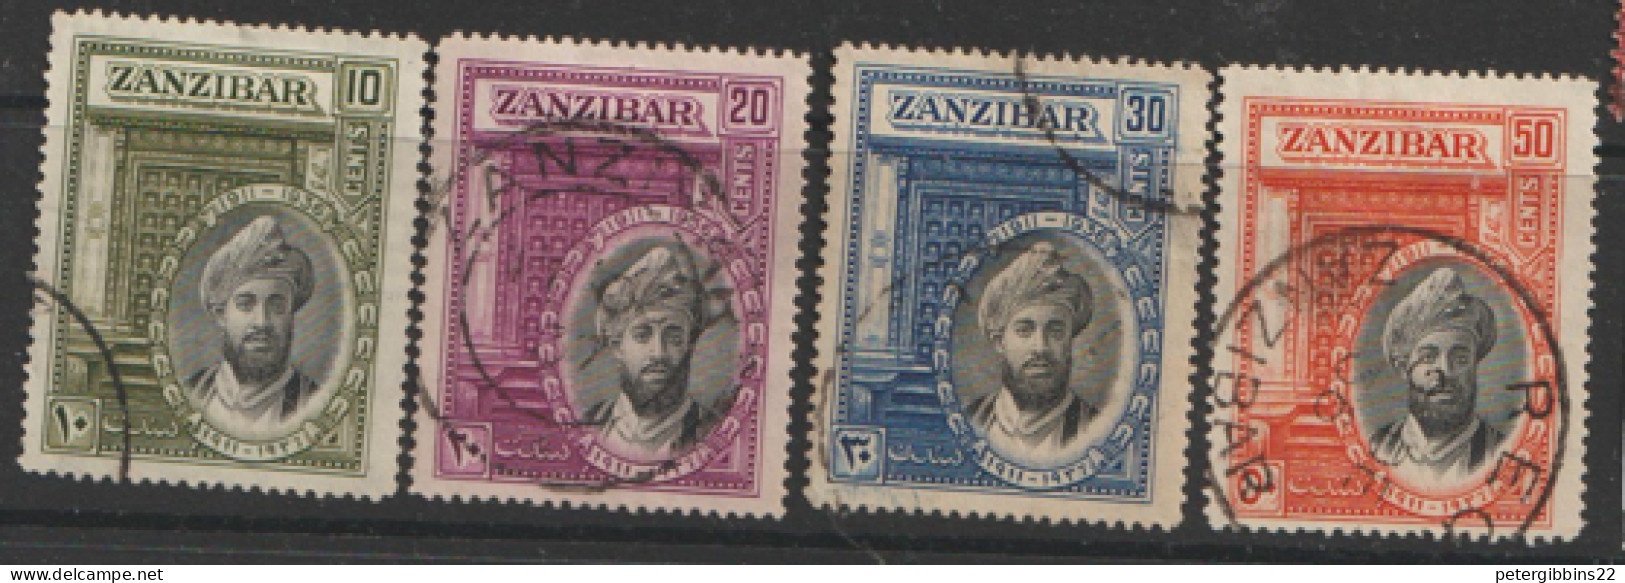 Zanzibar  1936 SG  323-6  Fine Used - Zanzibar (...-1963)